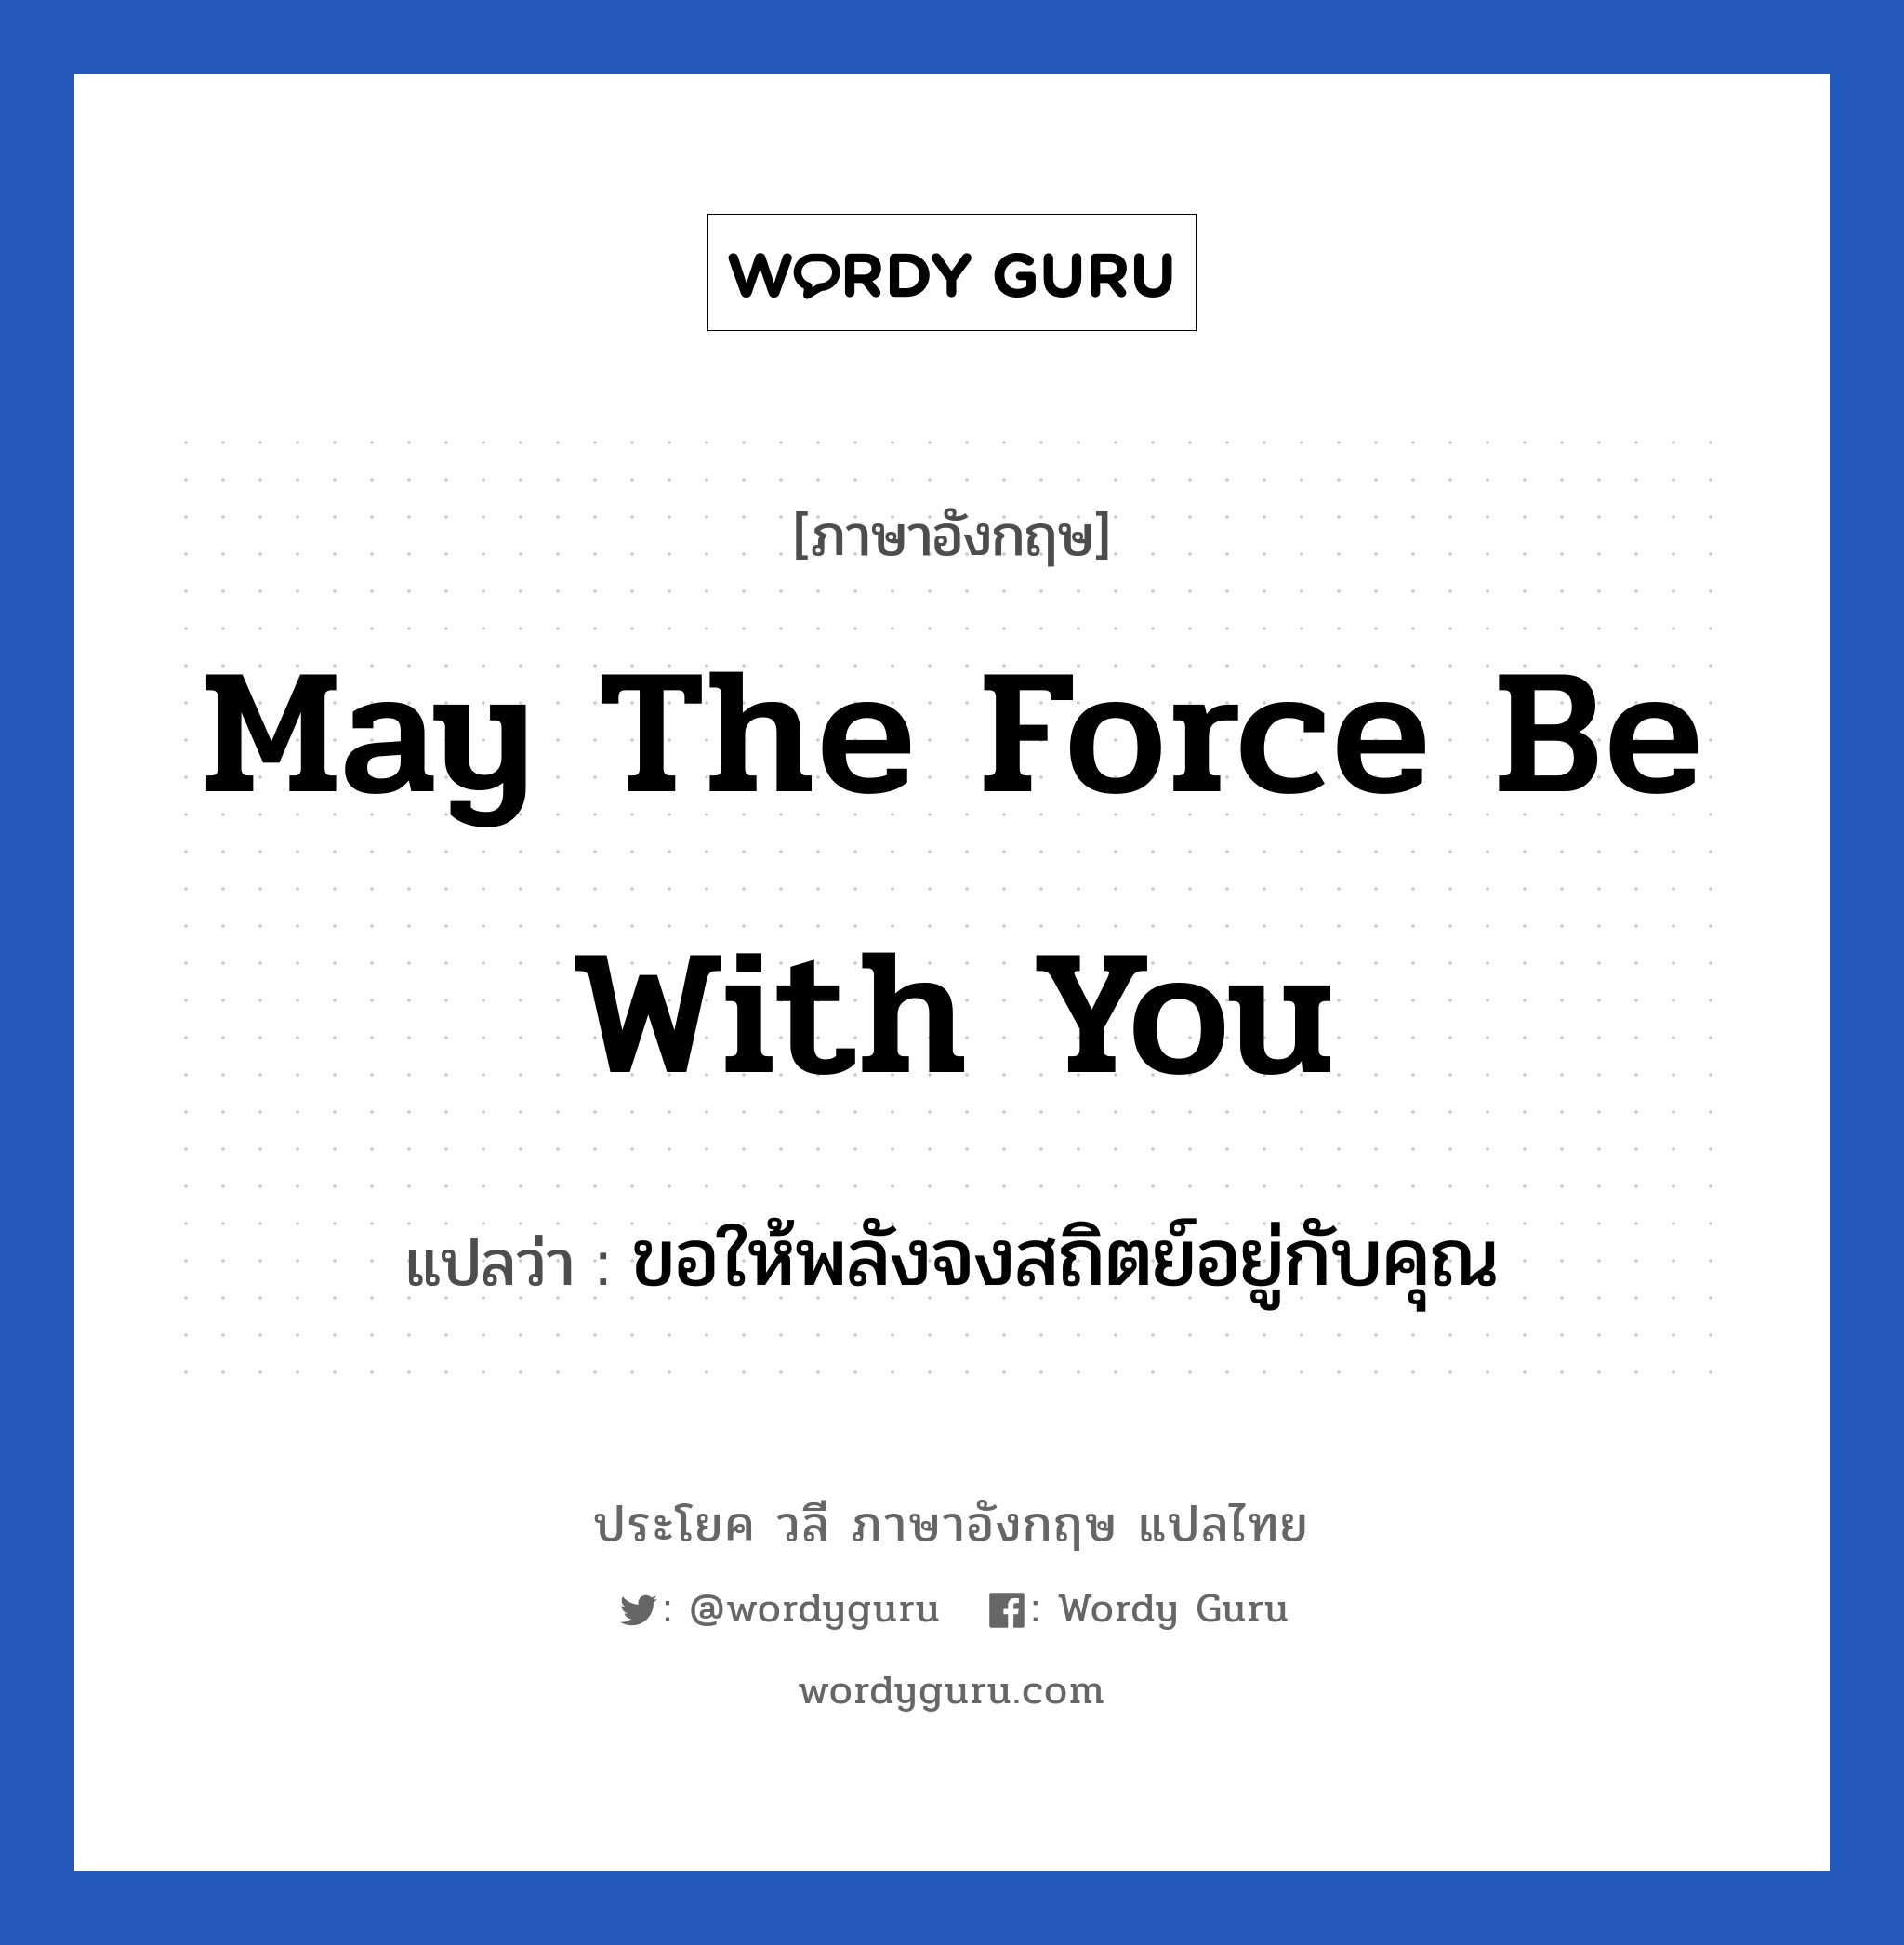 May the force be with you แปลว่า? เป็นประโยคในกลุ่มประเภท ให้กำลังใจ, วลีภาษาอังกฤษ May the force be with you แปลว่า ขอให้พลังจงสถิตย์อยู่กับคุณ หมวด ให้กำลังใจ